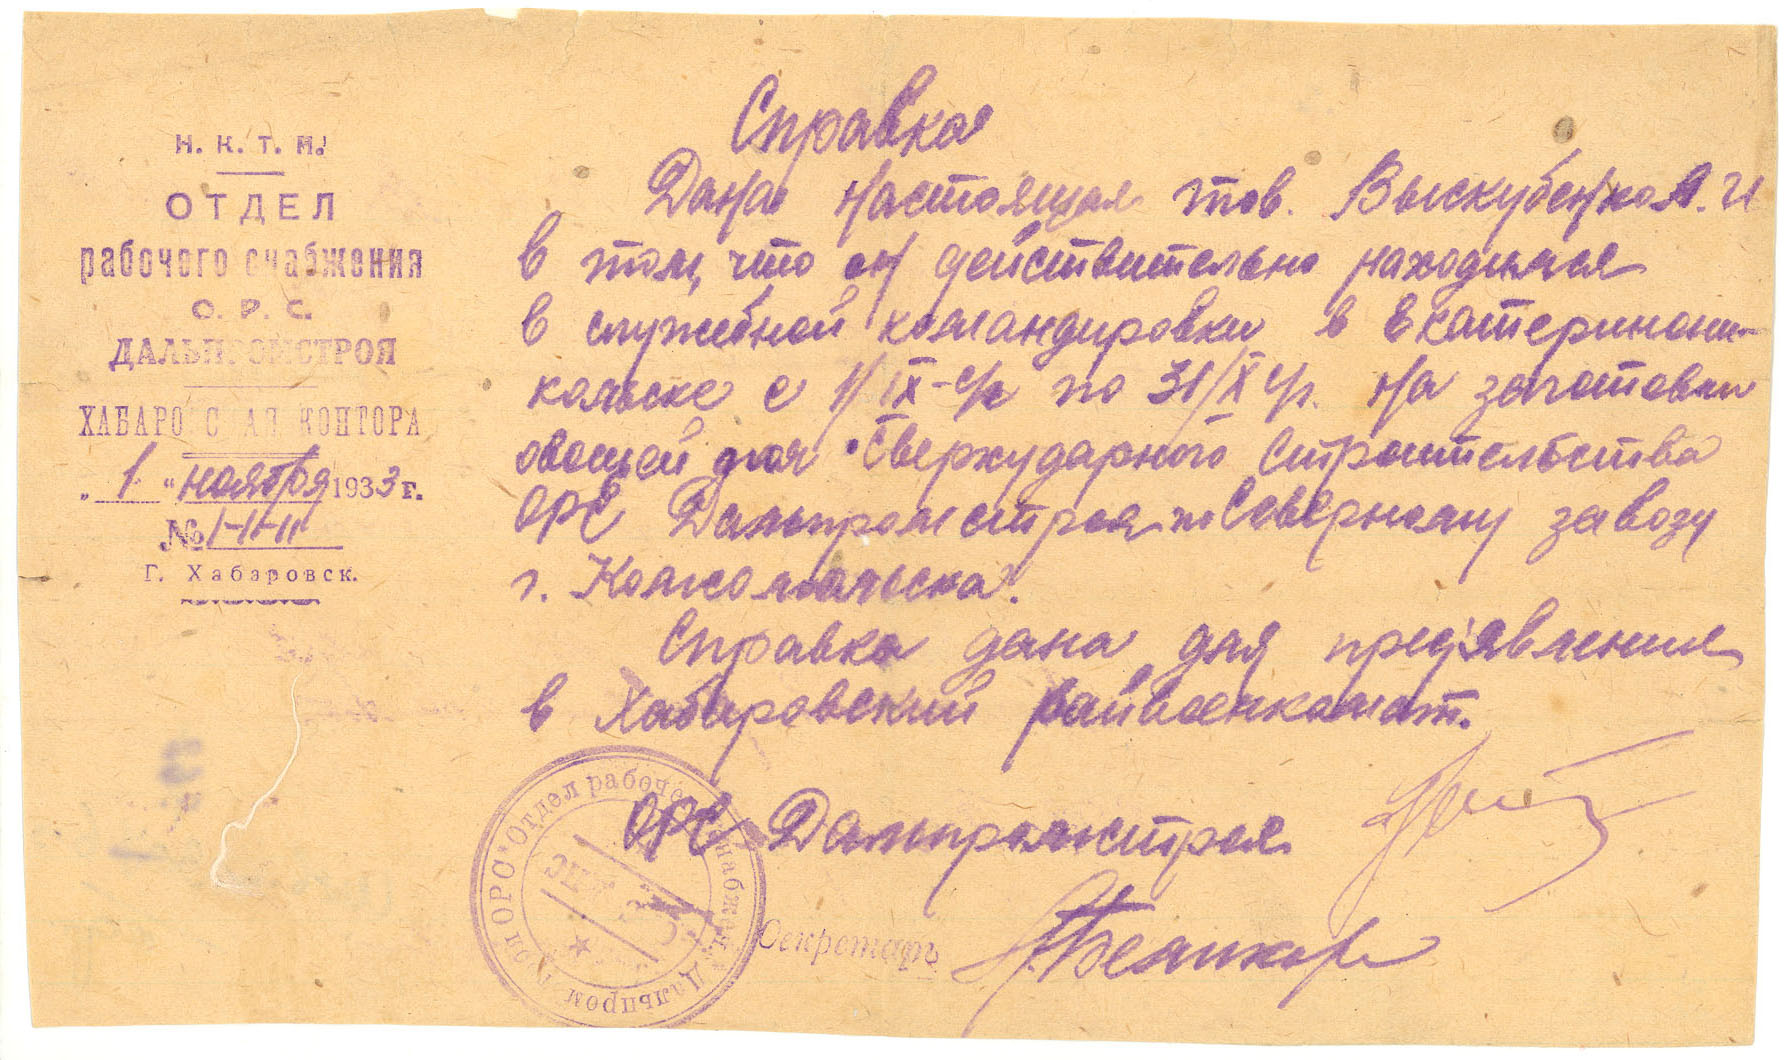 Справка № 1-11-11 о нахождении в командировке в Екатериноникольске Выскубенко Александра Ивановича